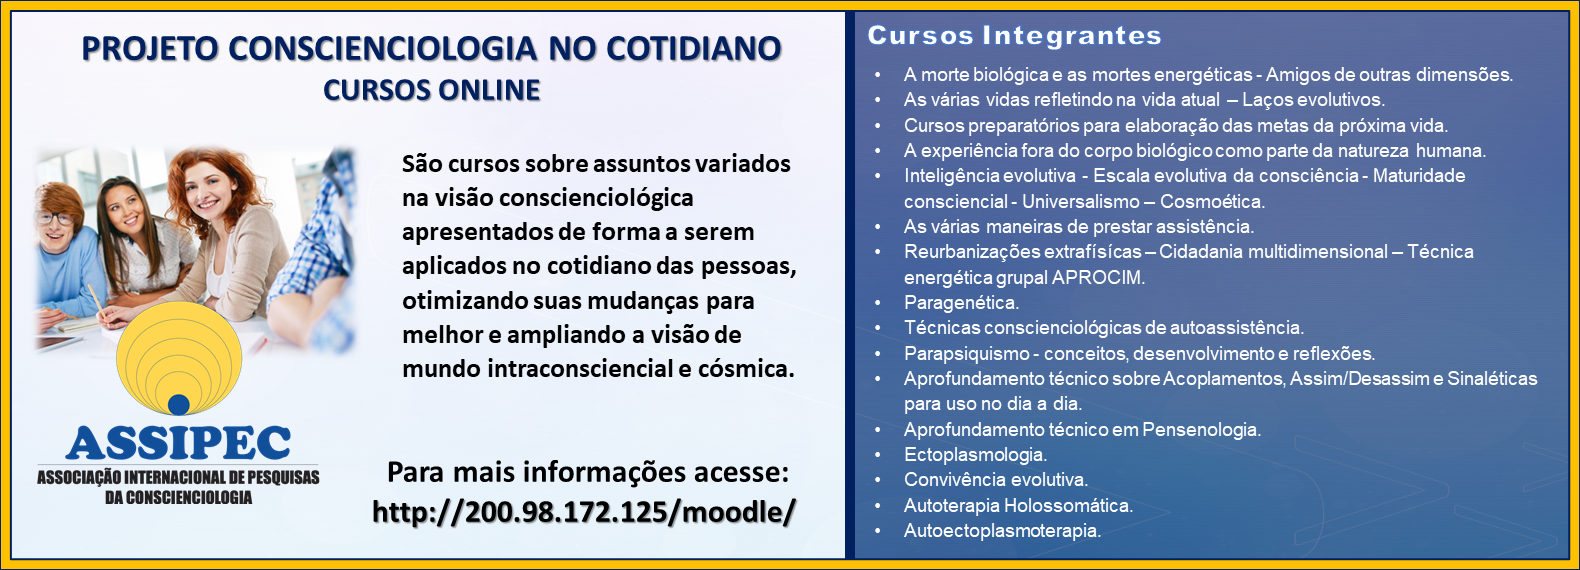 Site- banner Projeto Conscienciologia no Cotidiano